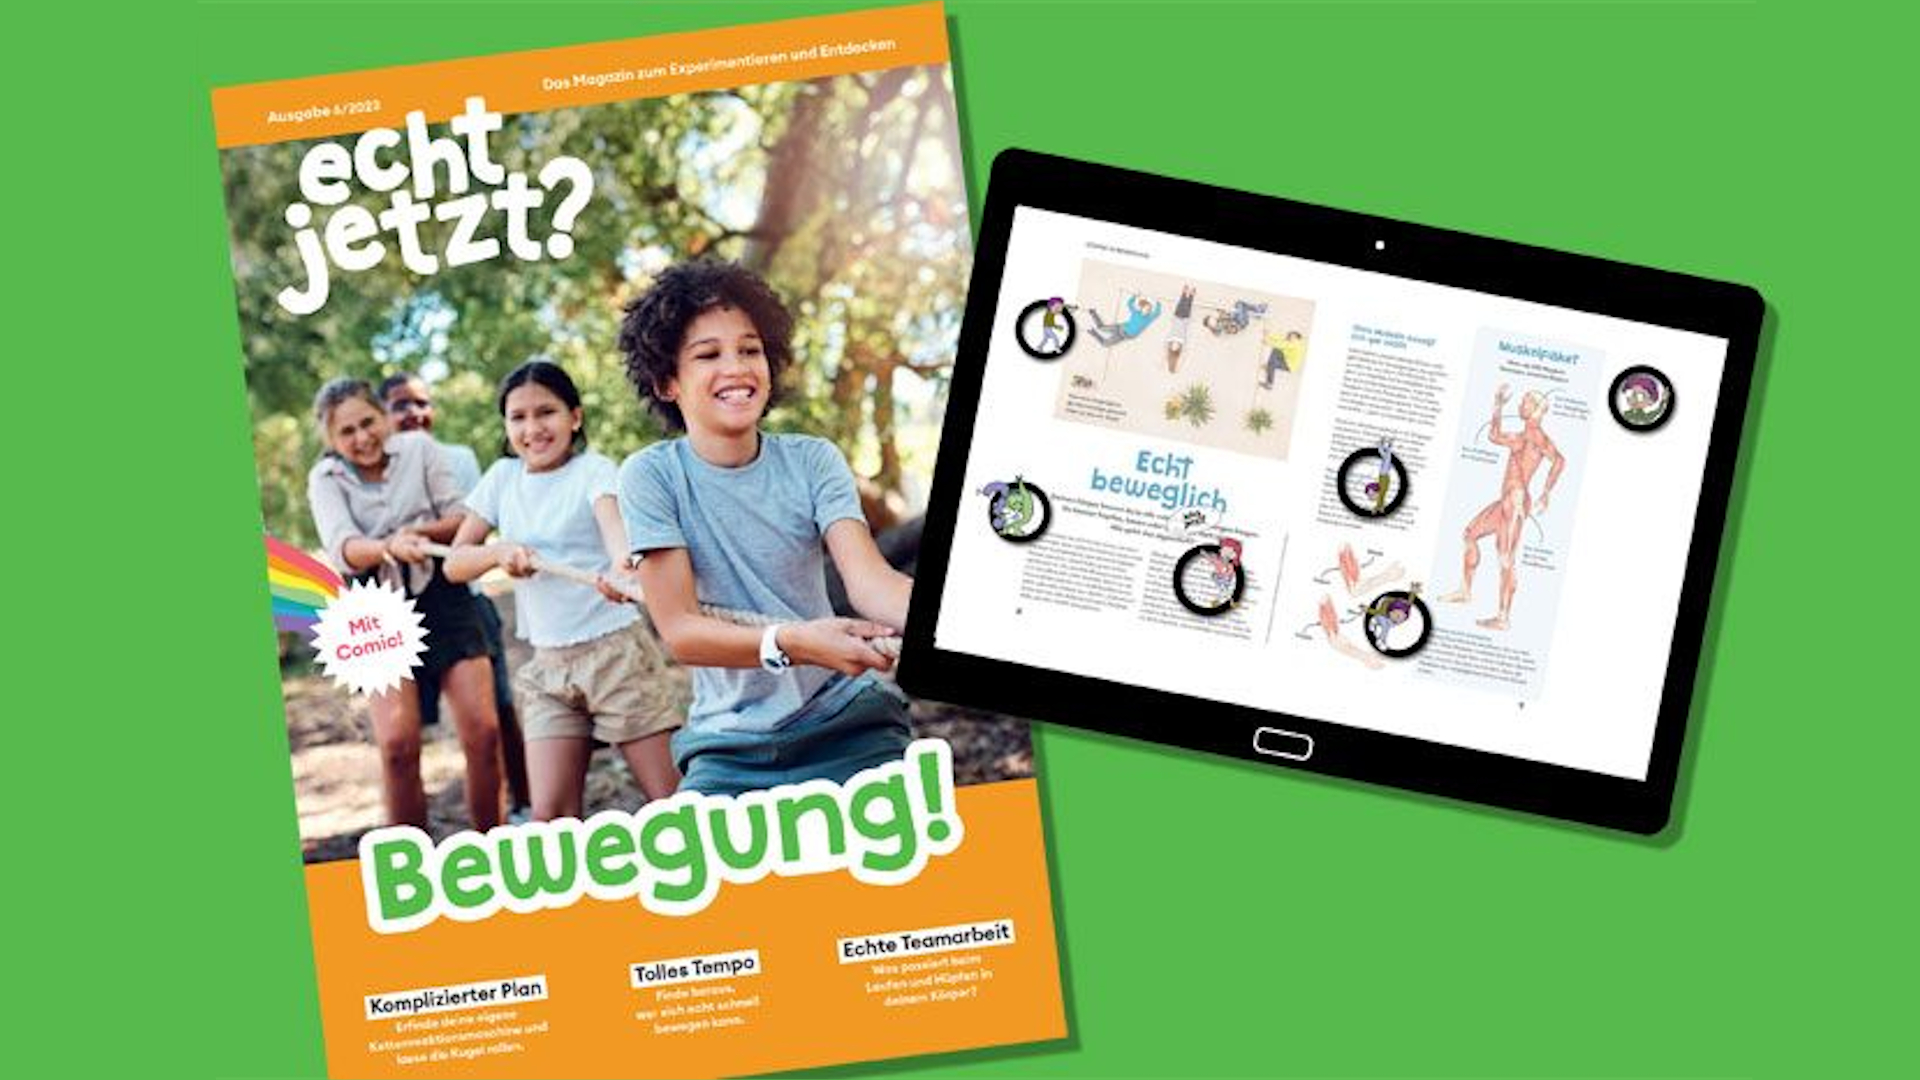 Neben dem Cover des Grundschulmagazins echt jetzt zur neuen Ausgabe Bewegung sieht man ein Tablet mit den online zur Verfügung gestellten Lehrmaterialien.